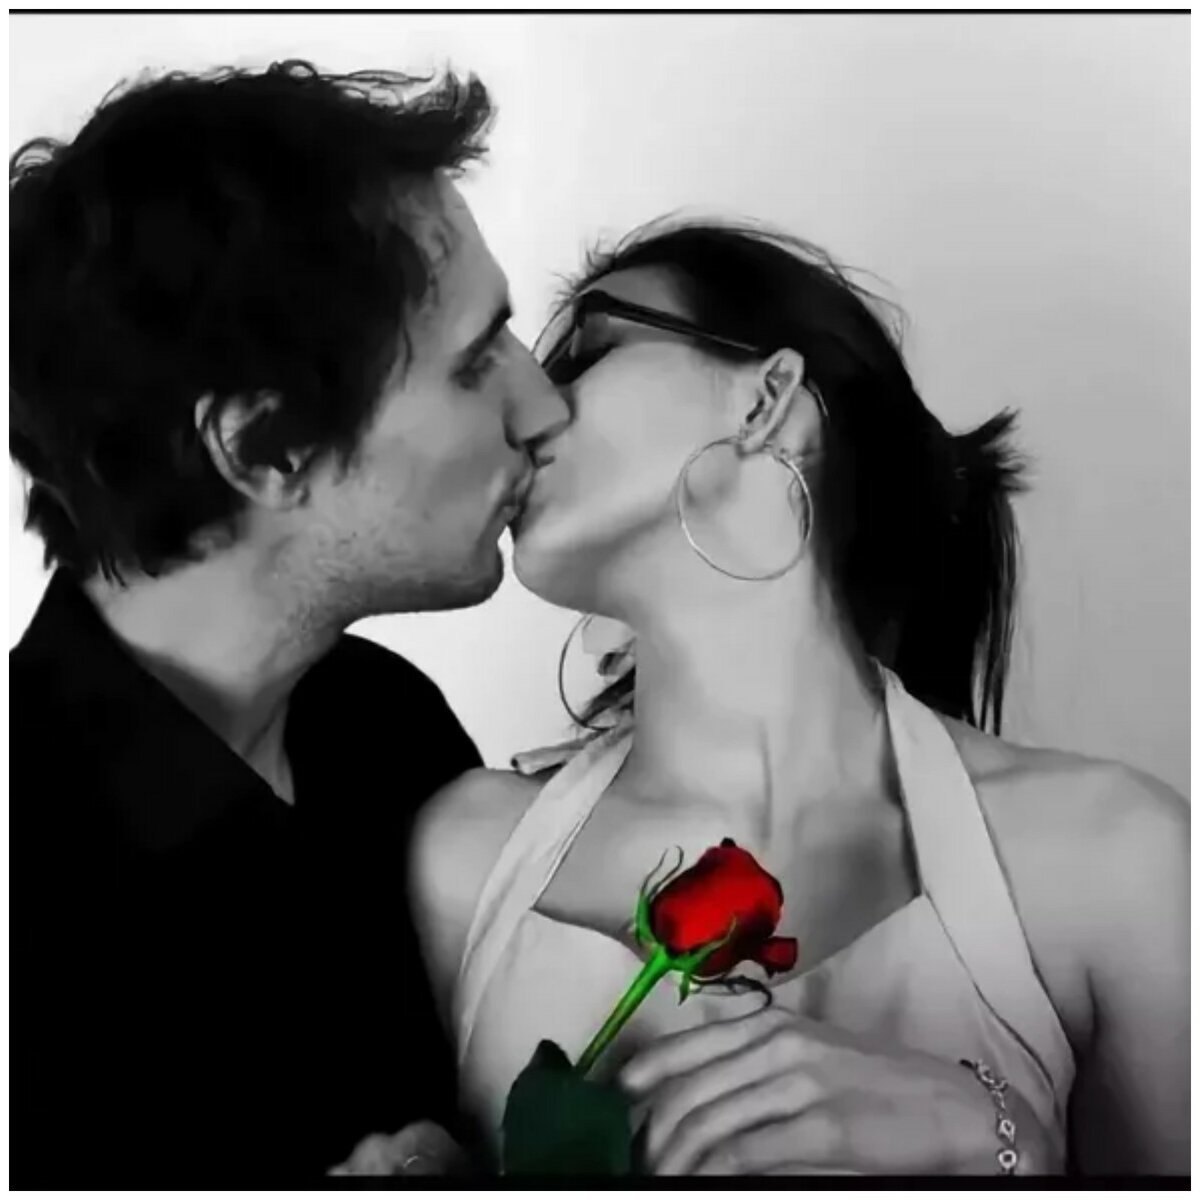 Мужчина целует любимую женщину. Поцелуй. Поцелуй для любимой. Поцелуй розы. Поцелуйчики для мужчины красивые.